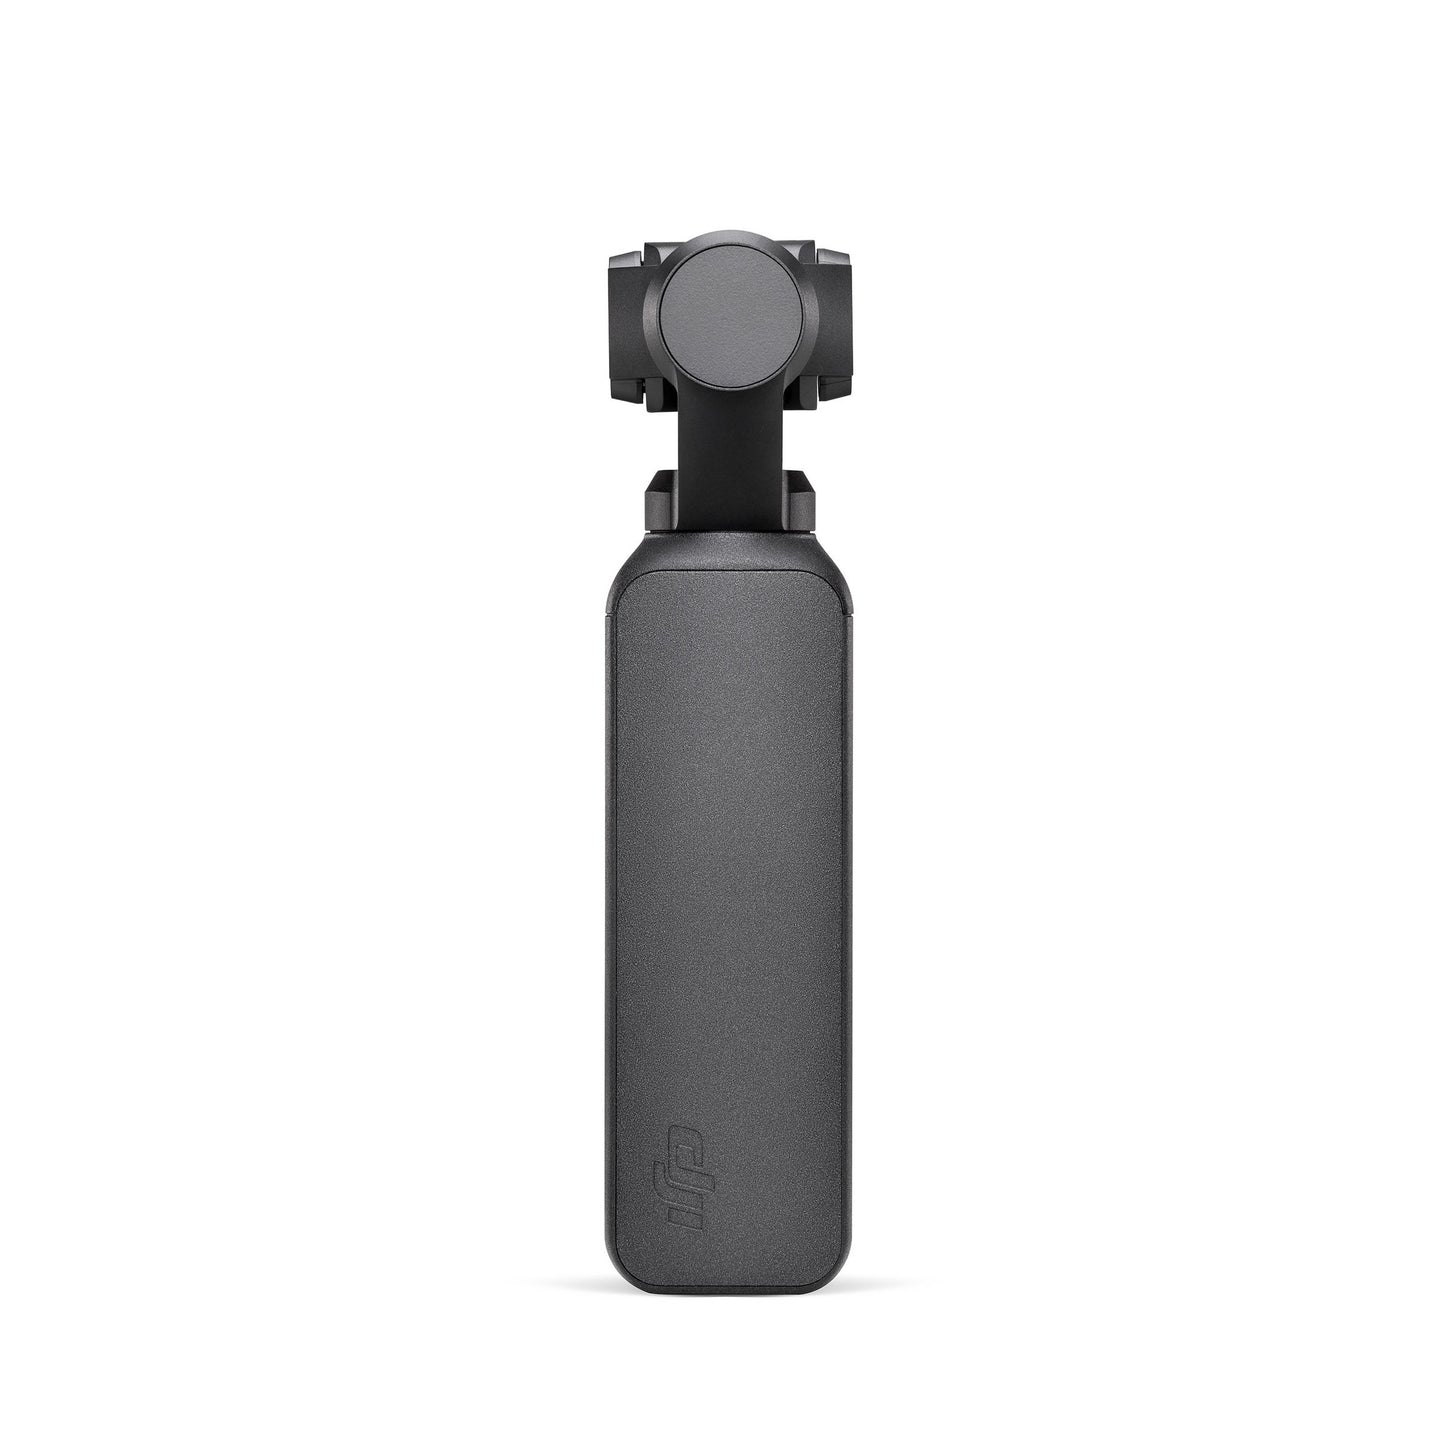 Osmo Pocket - dji - caméra portable - vue de dos